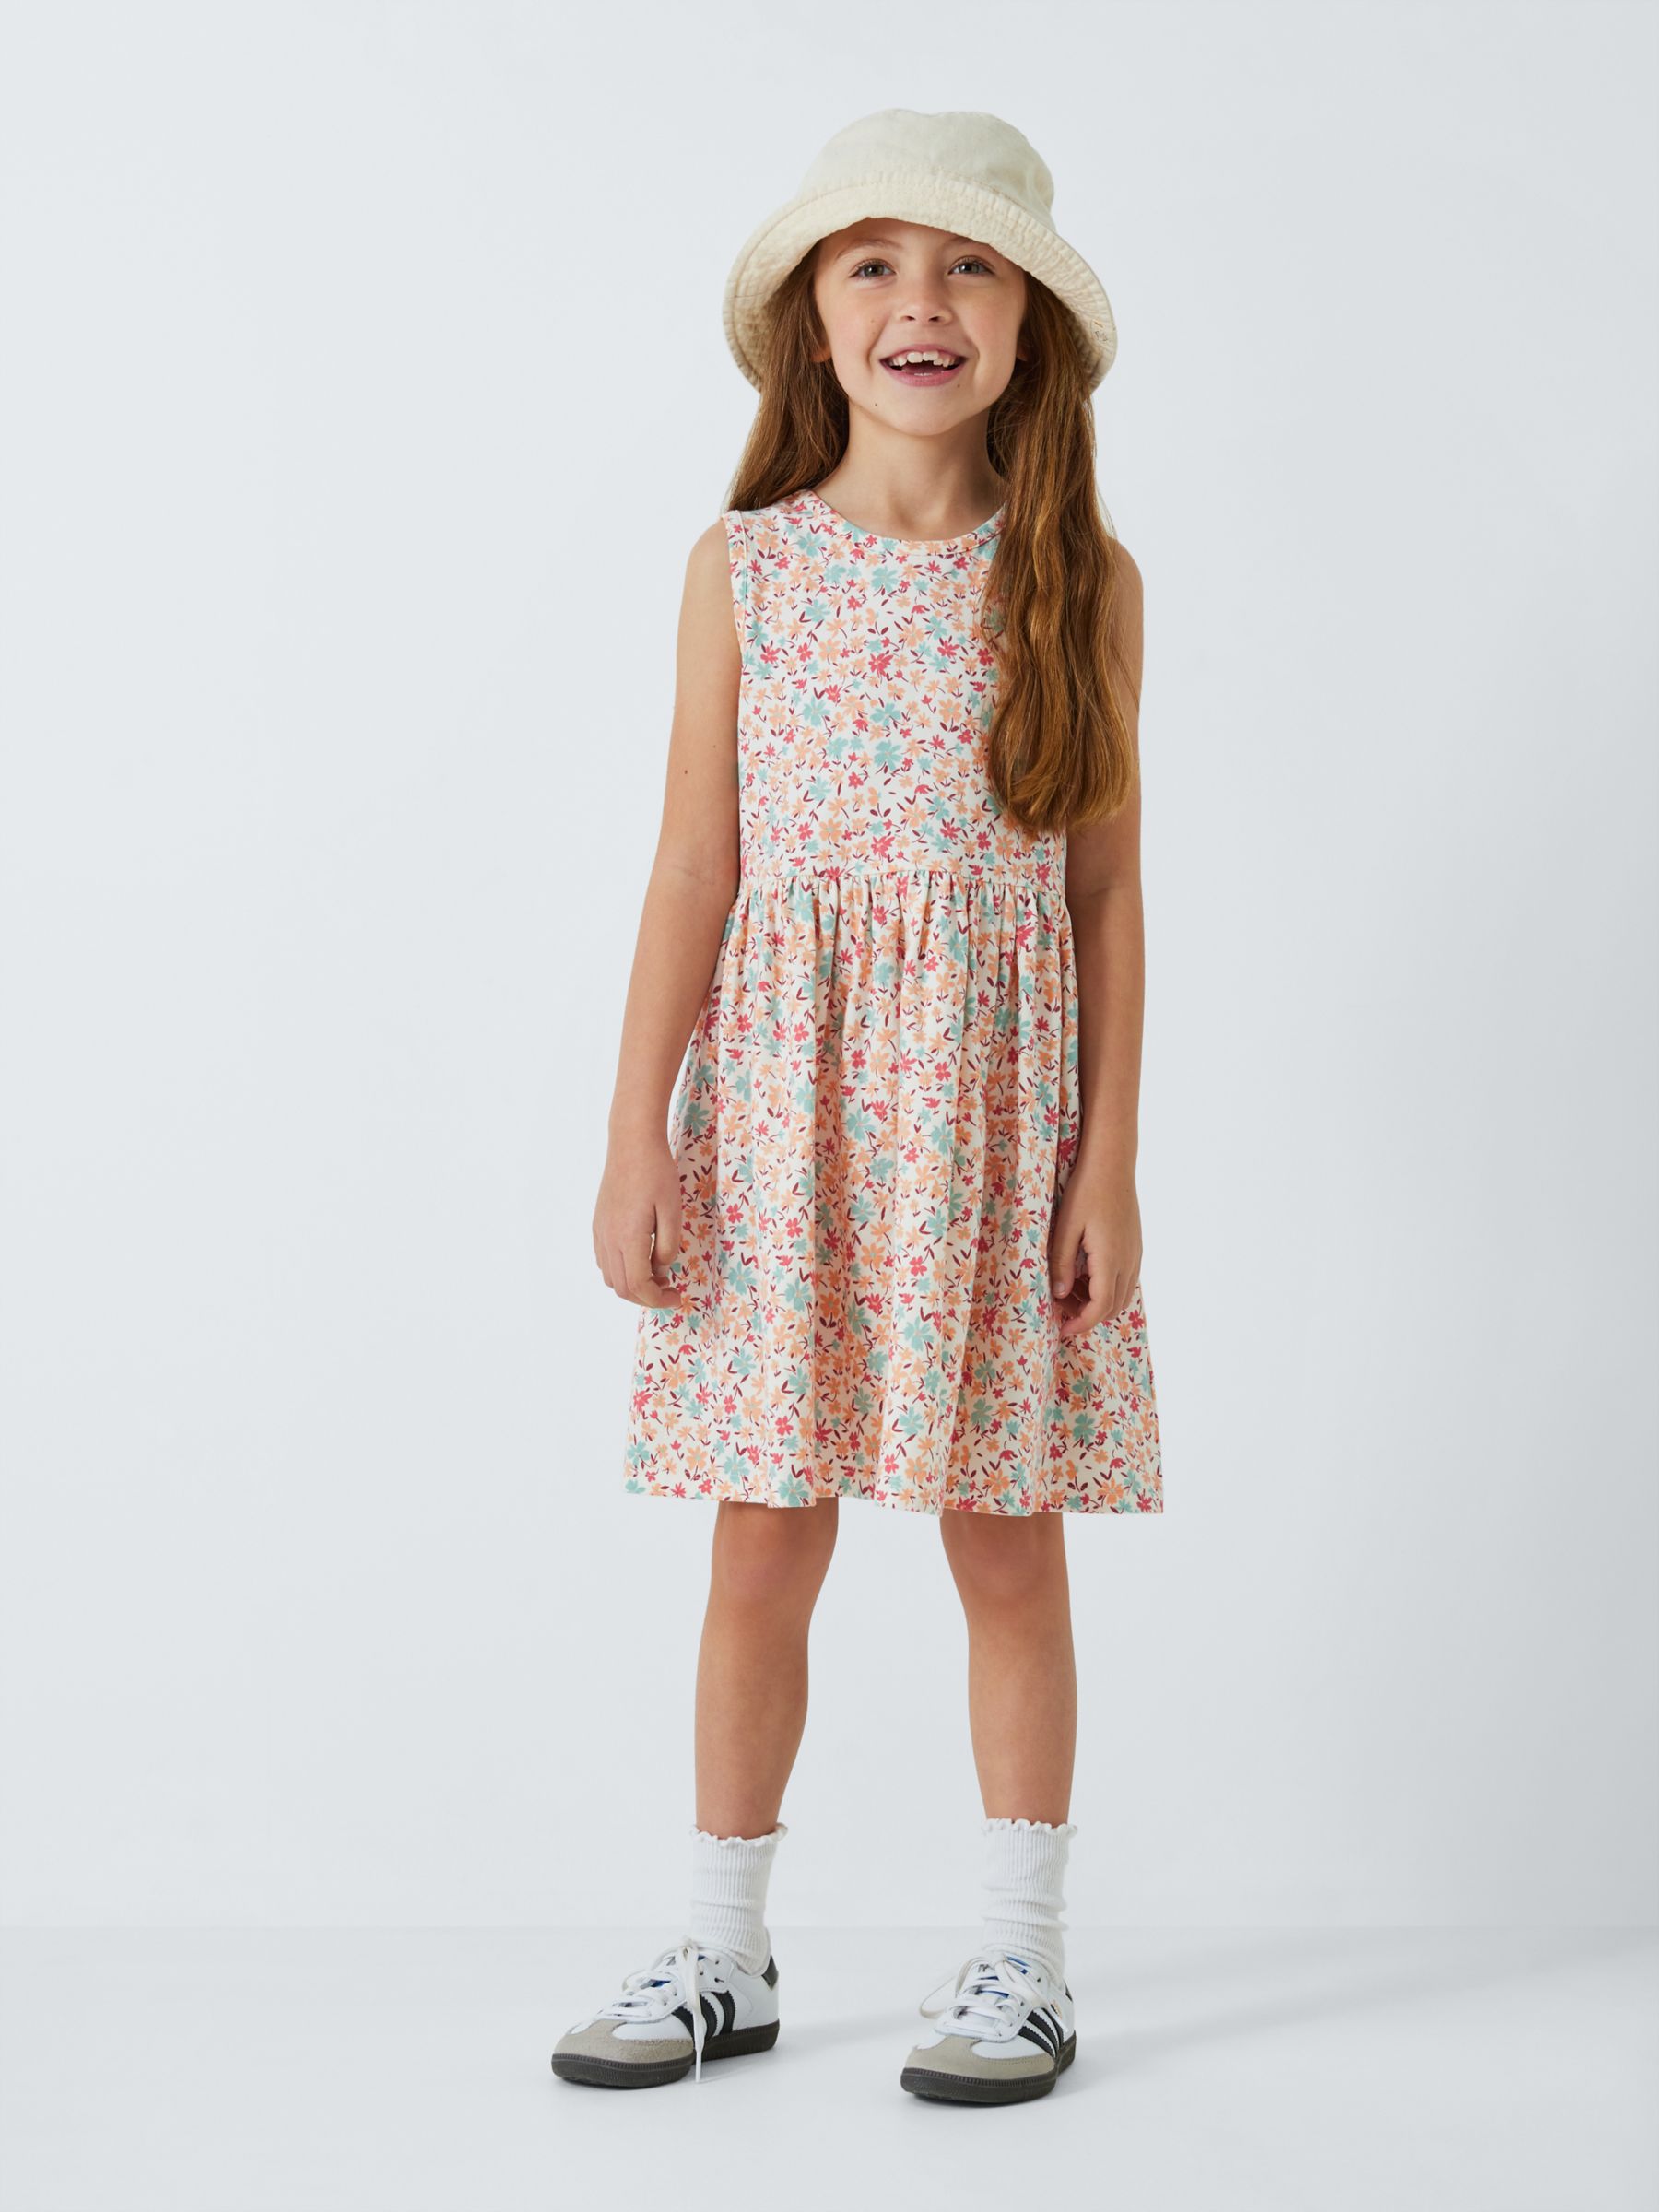 John Lewis Kids' Floral Sleeveless Smock Dress, Multi, 7 years